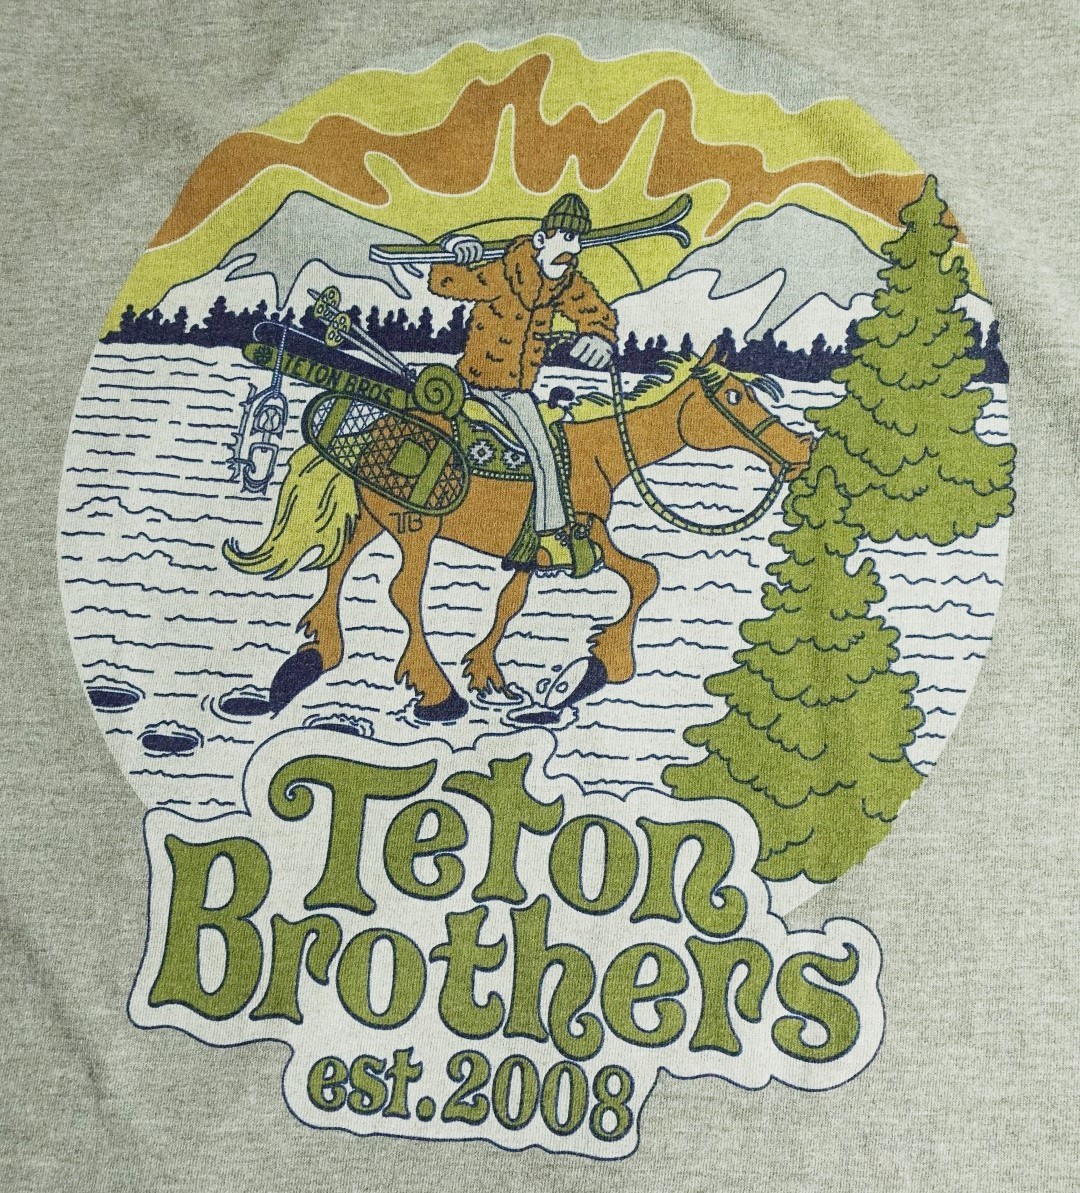 ▲TETON BROS. ポリエステル100% Teton Brothers 2008ロゴ 半袖 Tシャツ ミックスグレー M 美品!!!▲_画像3